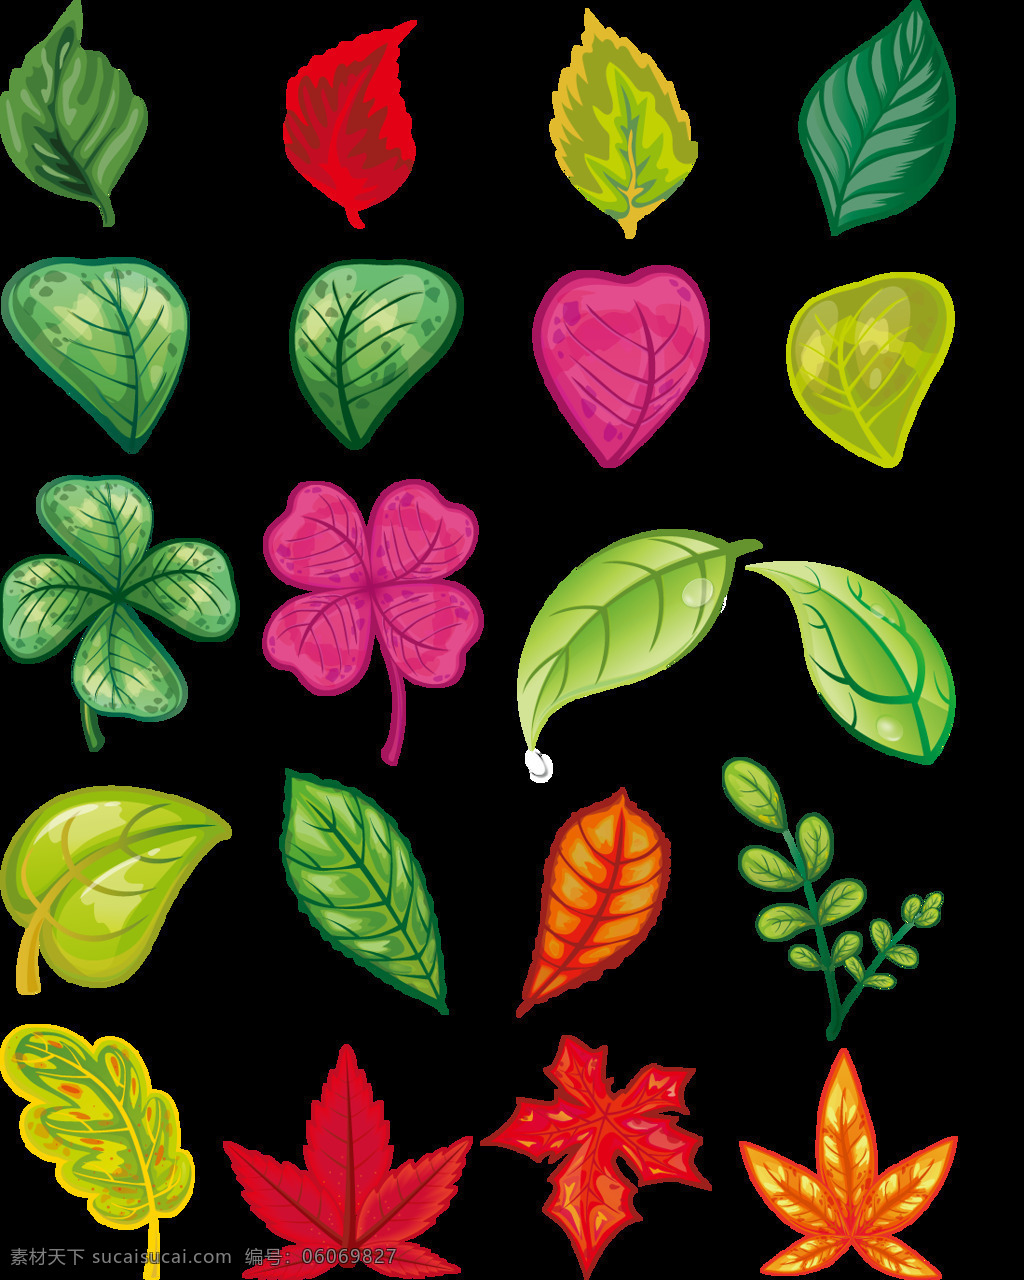 手绘 小 清新 彩色 叶子 绿叶 植物 装饰 元素 小清新 枫叶 幸运草 四叶草 水珠